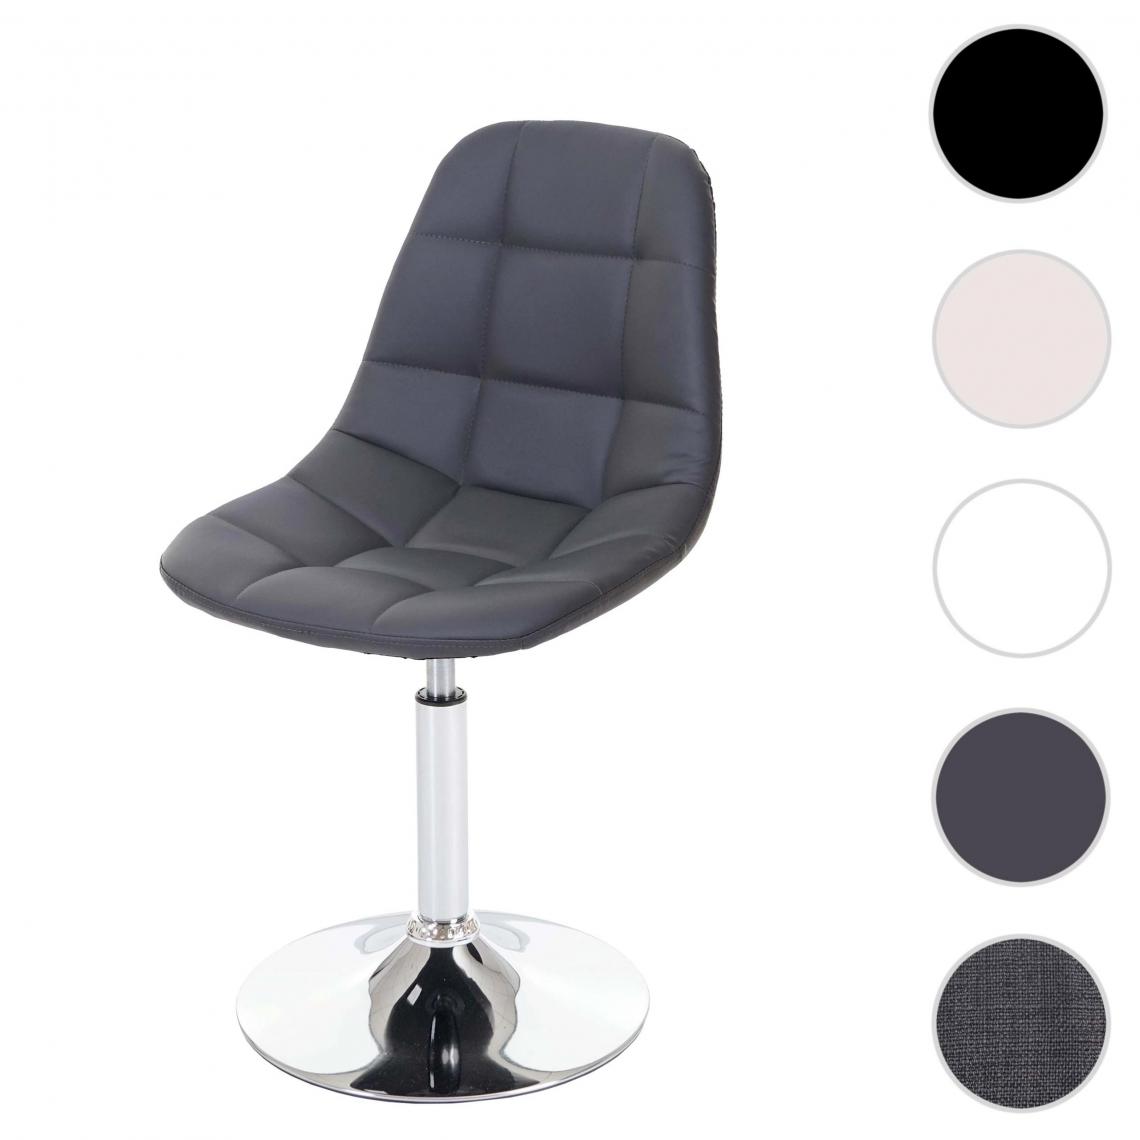 Mendler - Chaise de salle à manger HWC-A60, chaise pivotante, design rétro ~ similicuir gris, pied chromé - Chaises